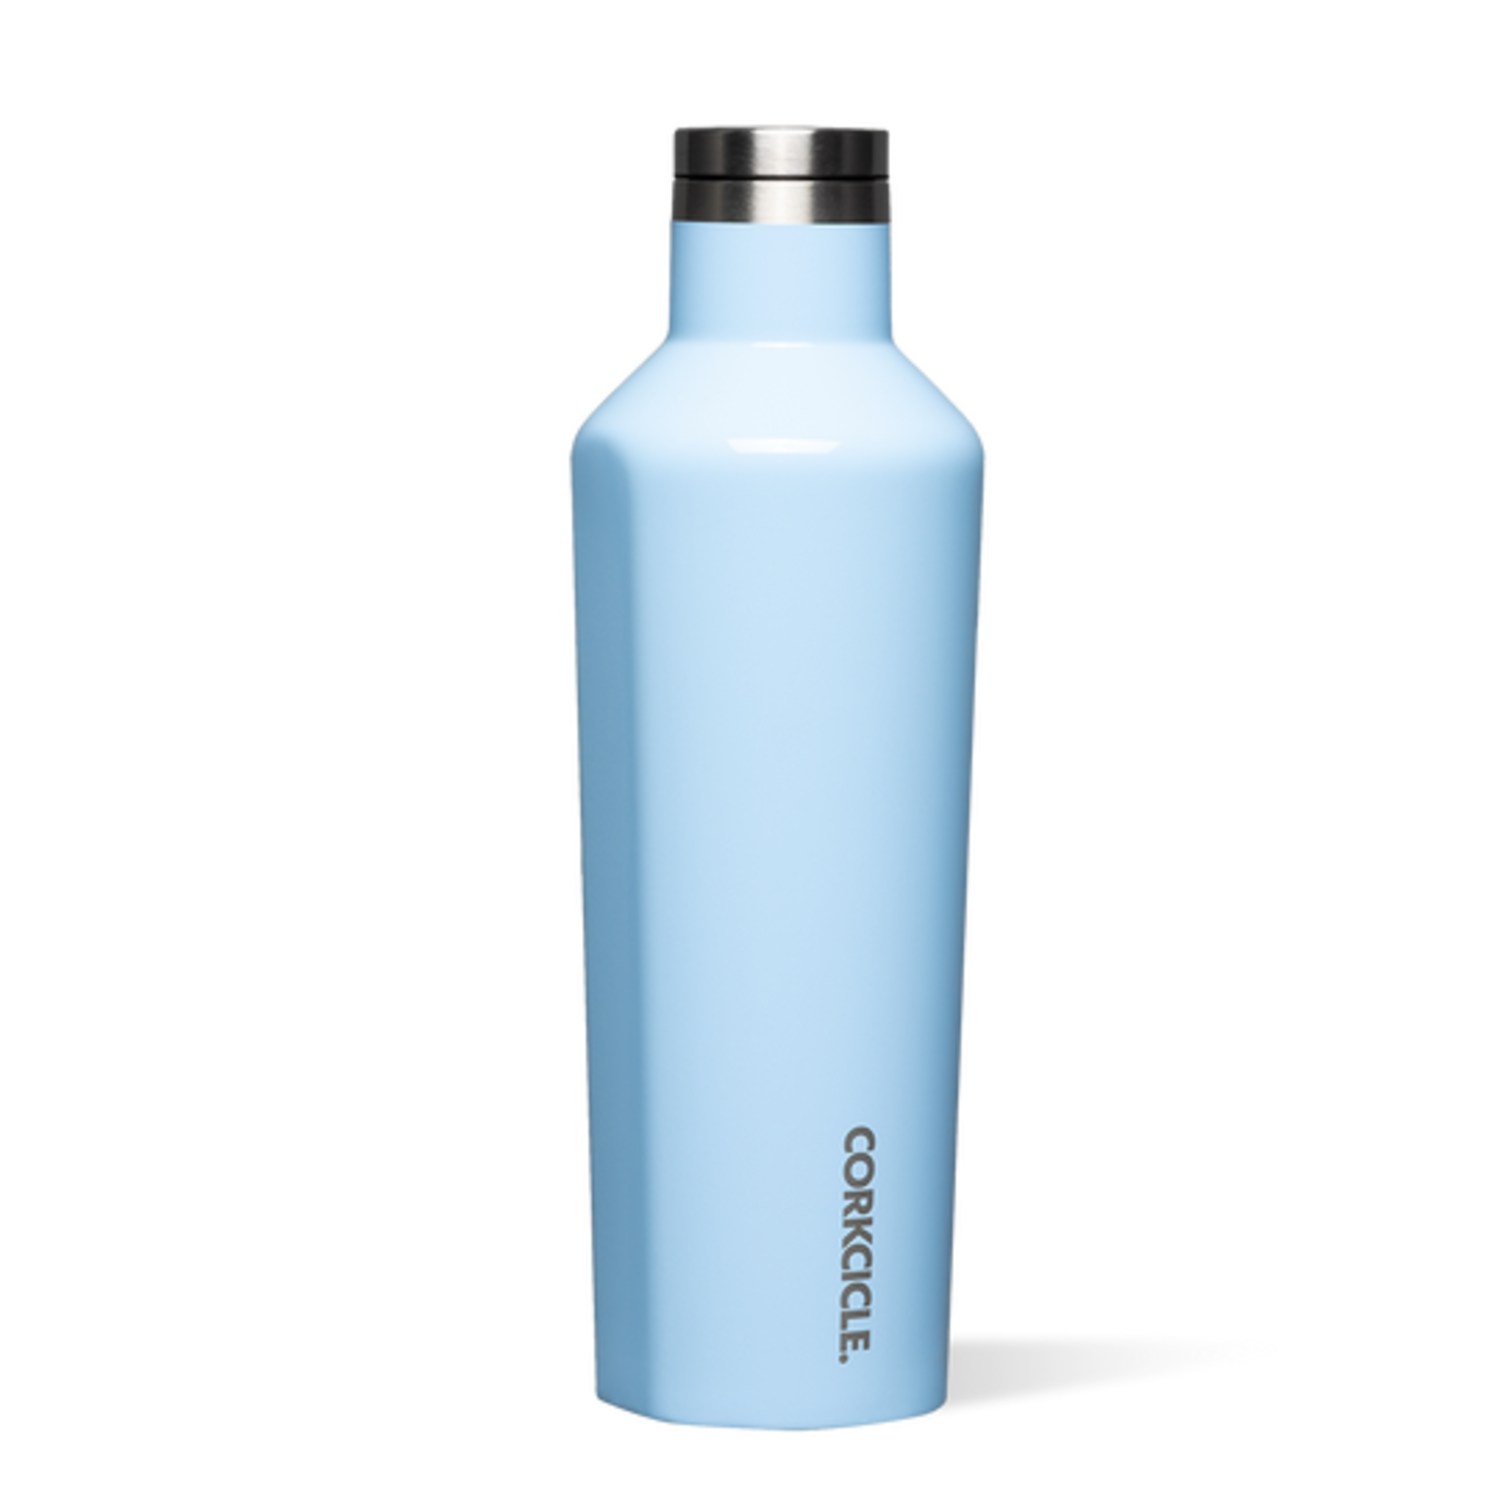 https://cdn.shoplightspeed.com/shops/606996/files/52337667/1500x4000x3/16oz-classic-canteen-water-bottle.jpg